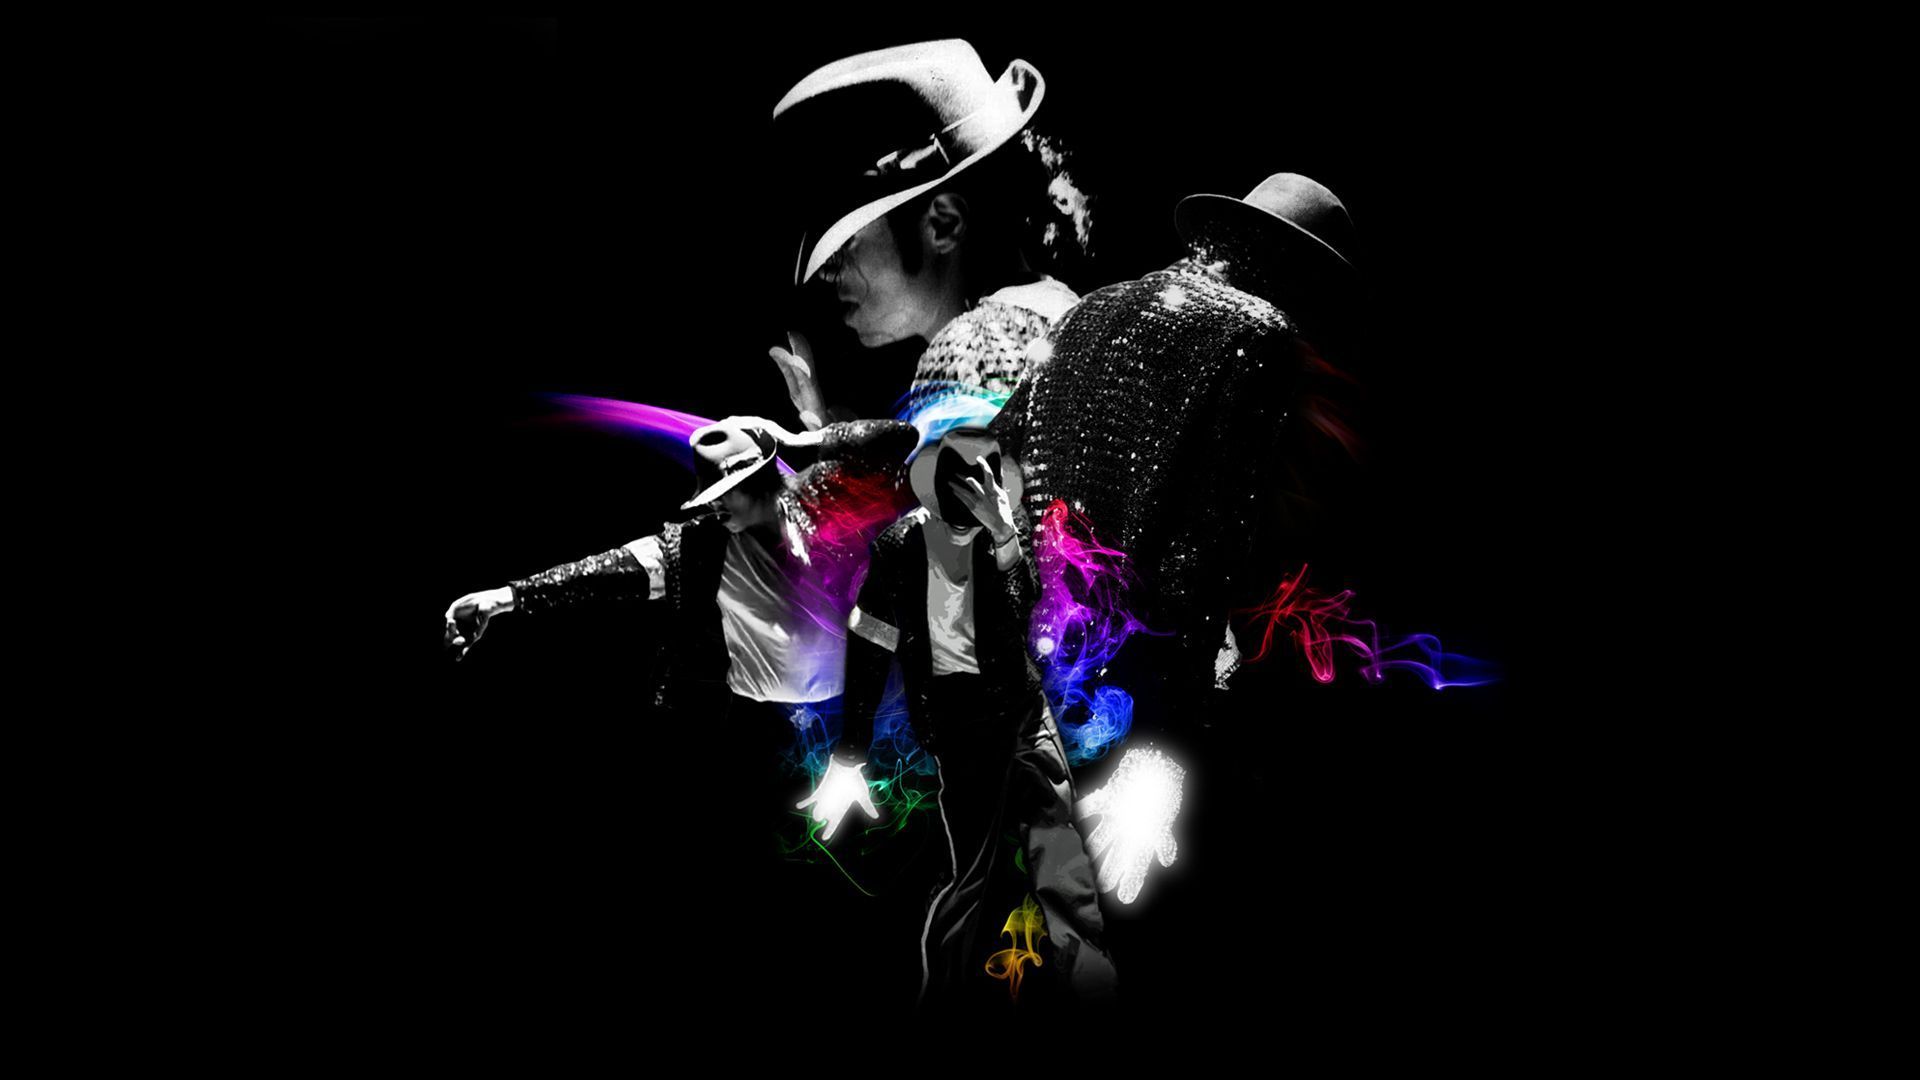 Michael Jackson Music And Dancing Wallpaper Pi #2862 Wallpaper ...